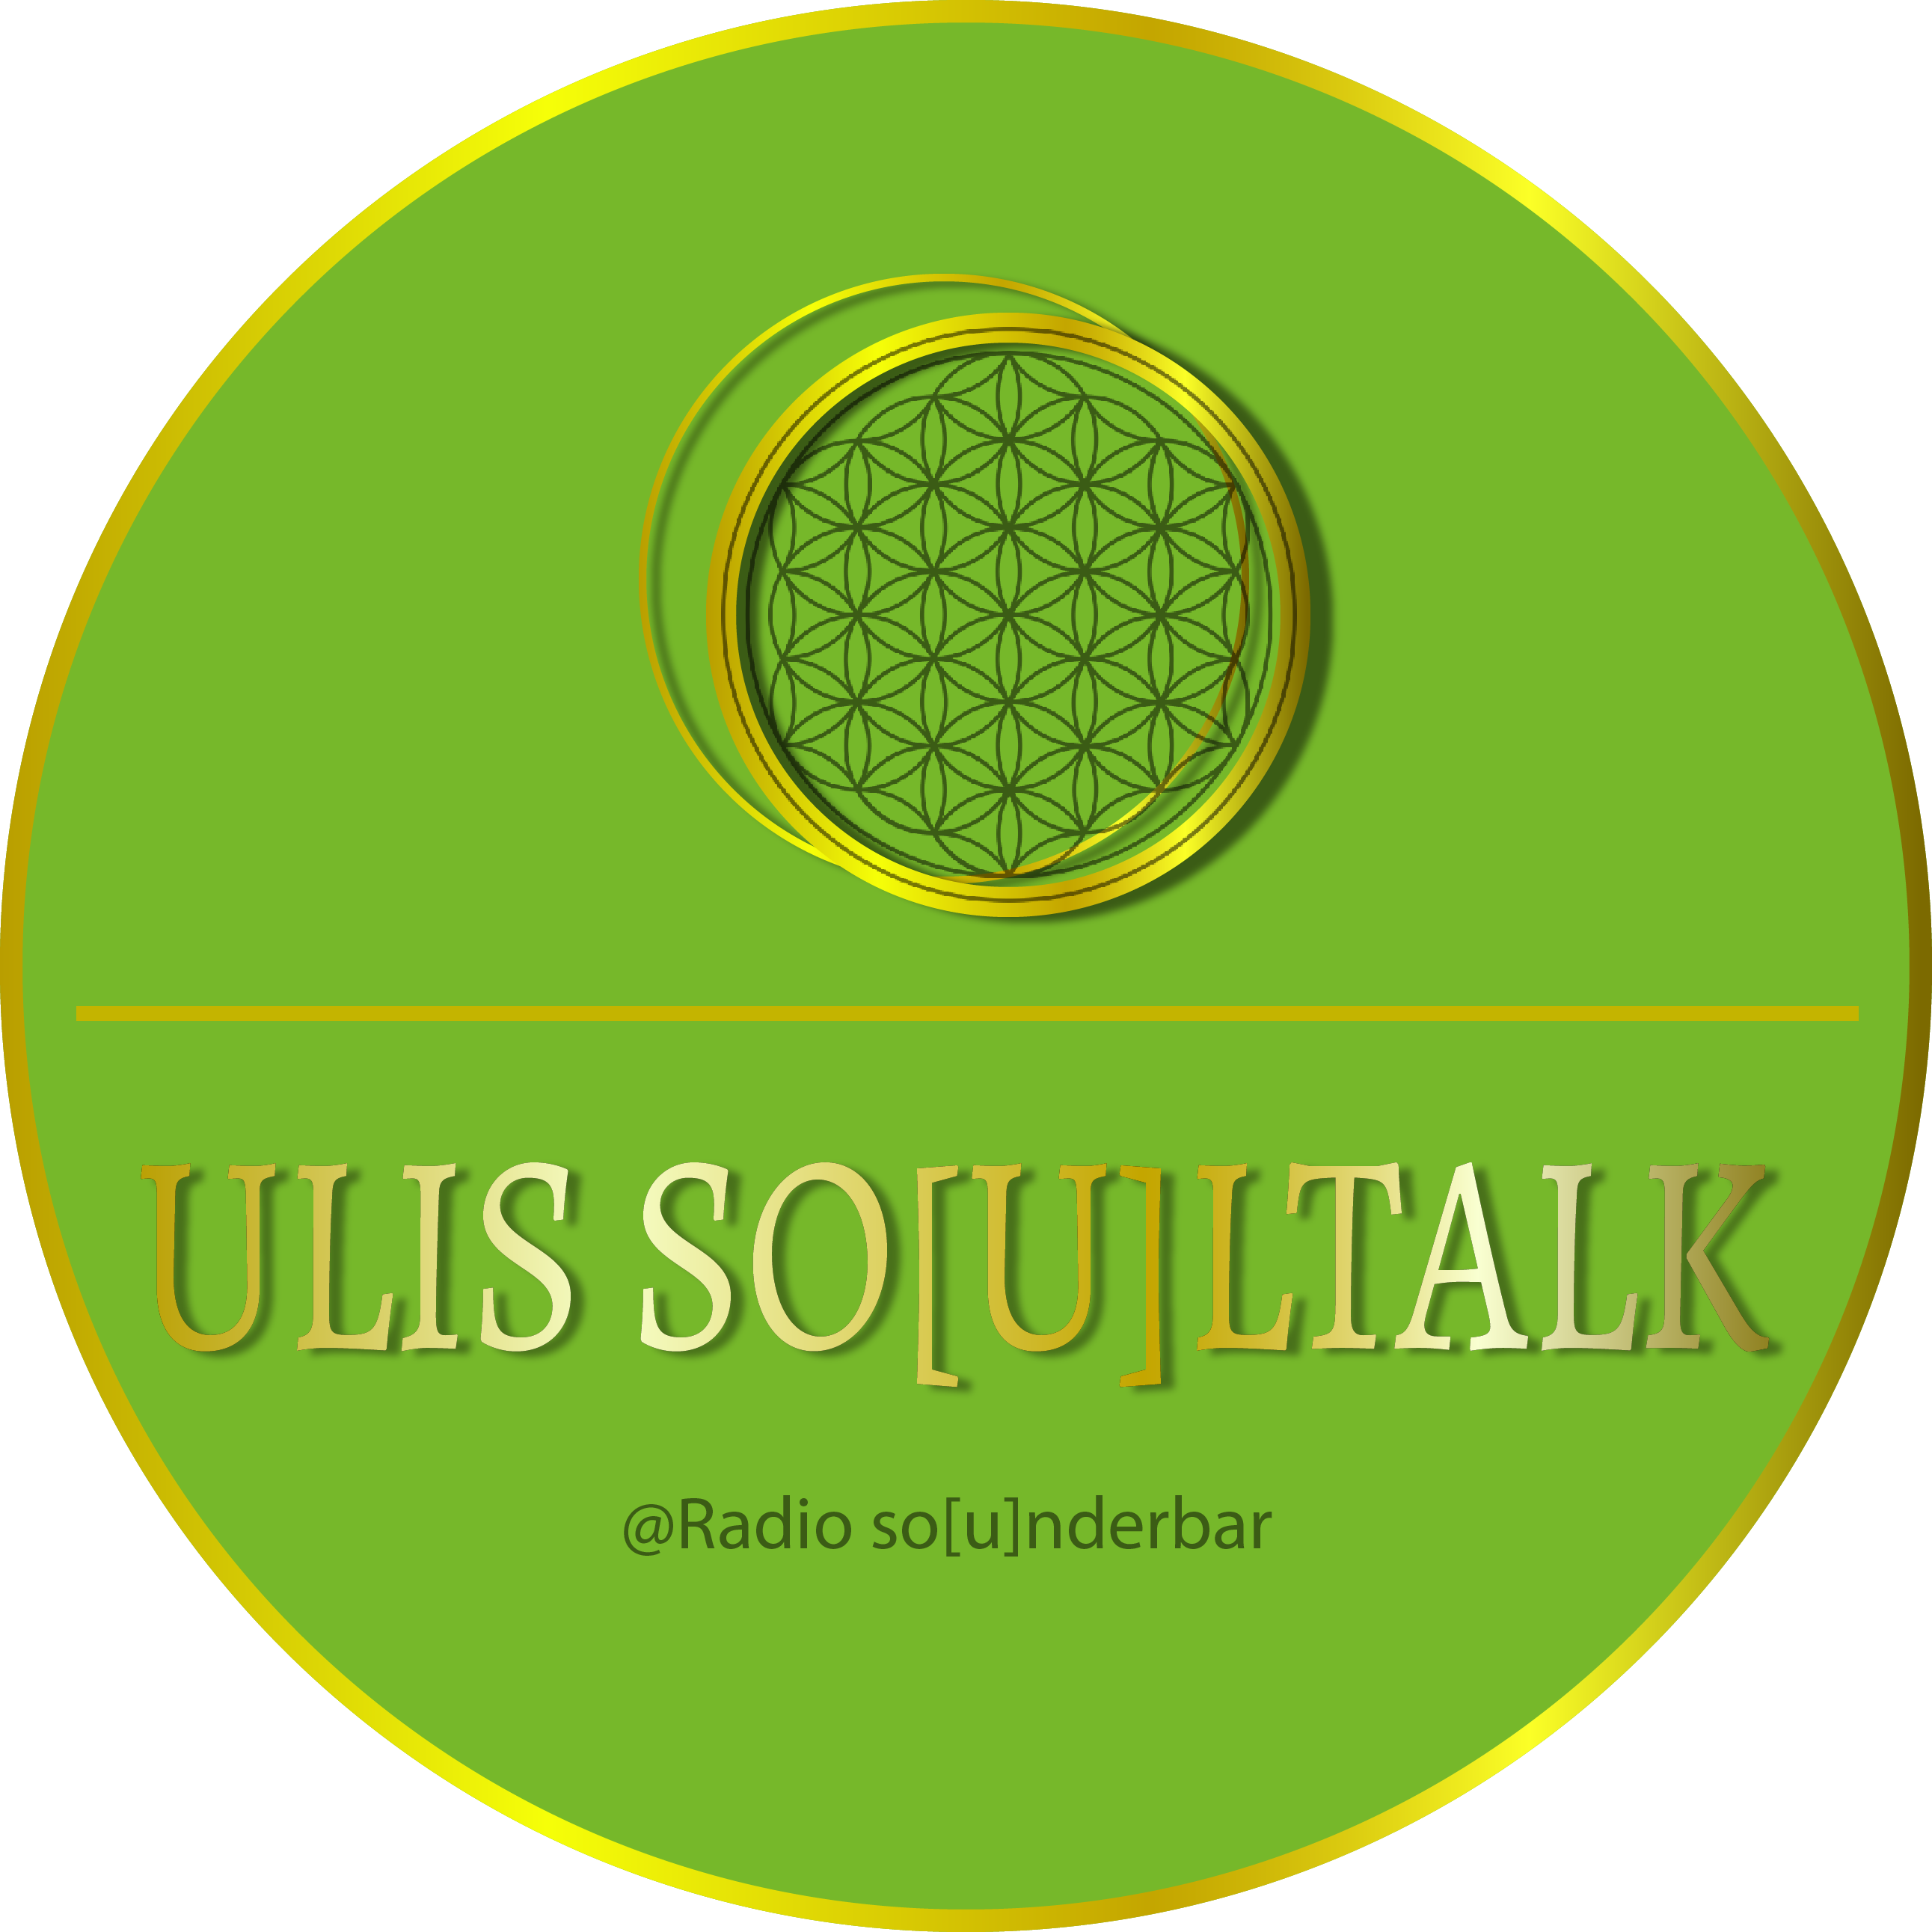 Uli's soul talk